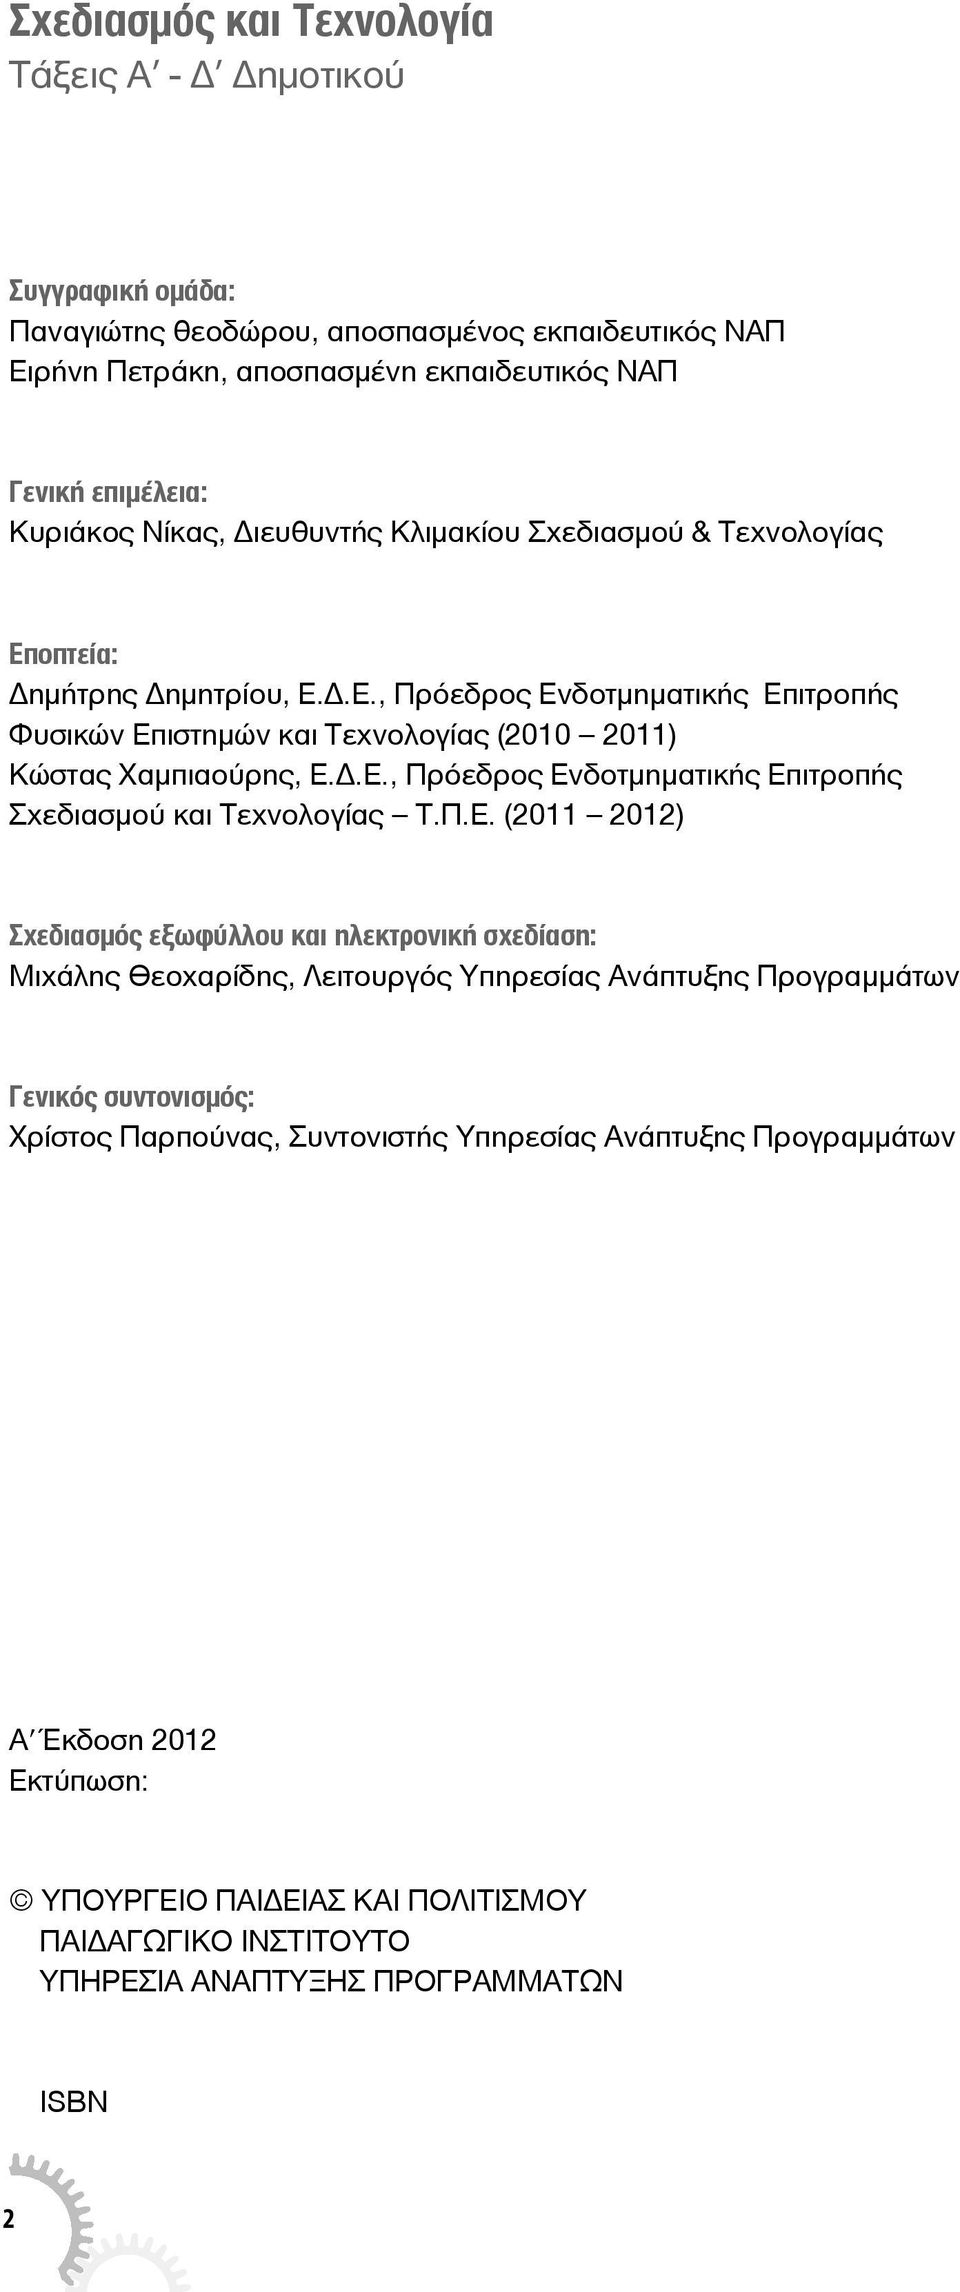 Π.Ε. (2011 2012) Σχεδιασμός εξωφύλλου και ηλεκτρονική σχεδίαση: Μιχάλης Θεοχαρίδης, Λειτουργός Υπηρεσίας Ανάπτυξης Προγραμμάτων Γενικός συντονισμός: Χρίστος Παρπούνας, Συντονιστής Υπηρεσίας